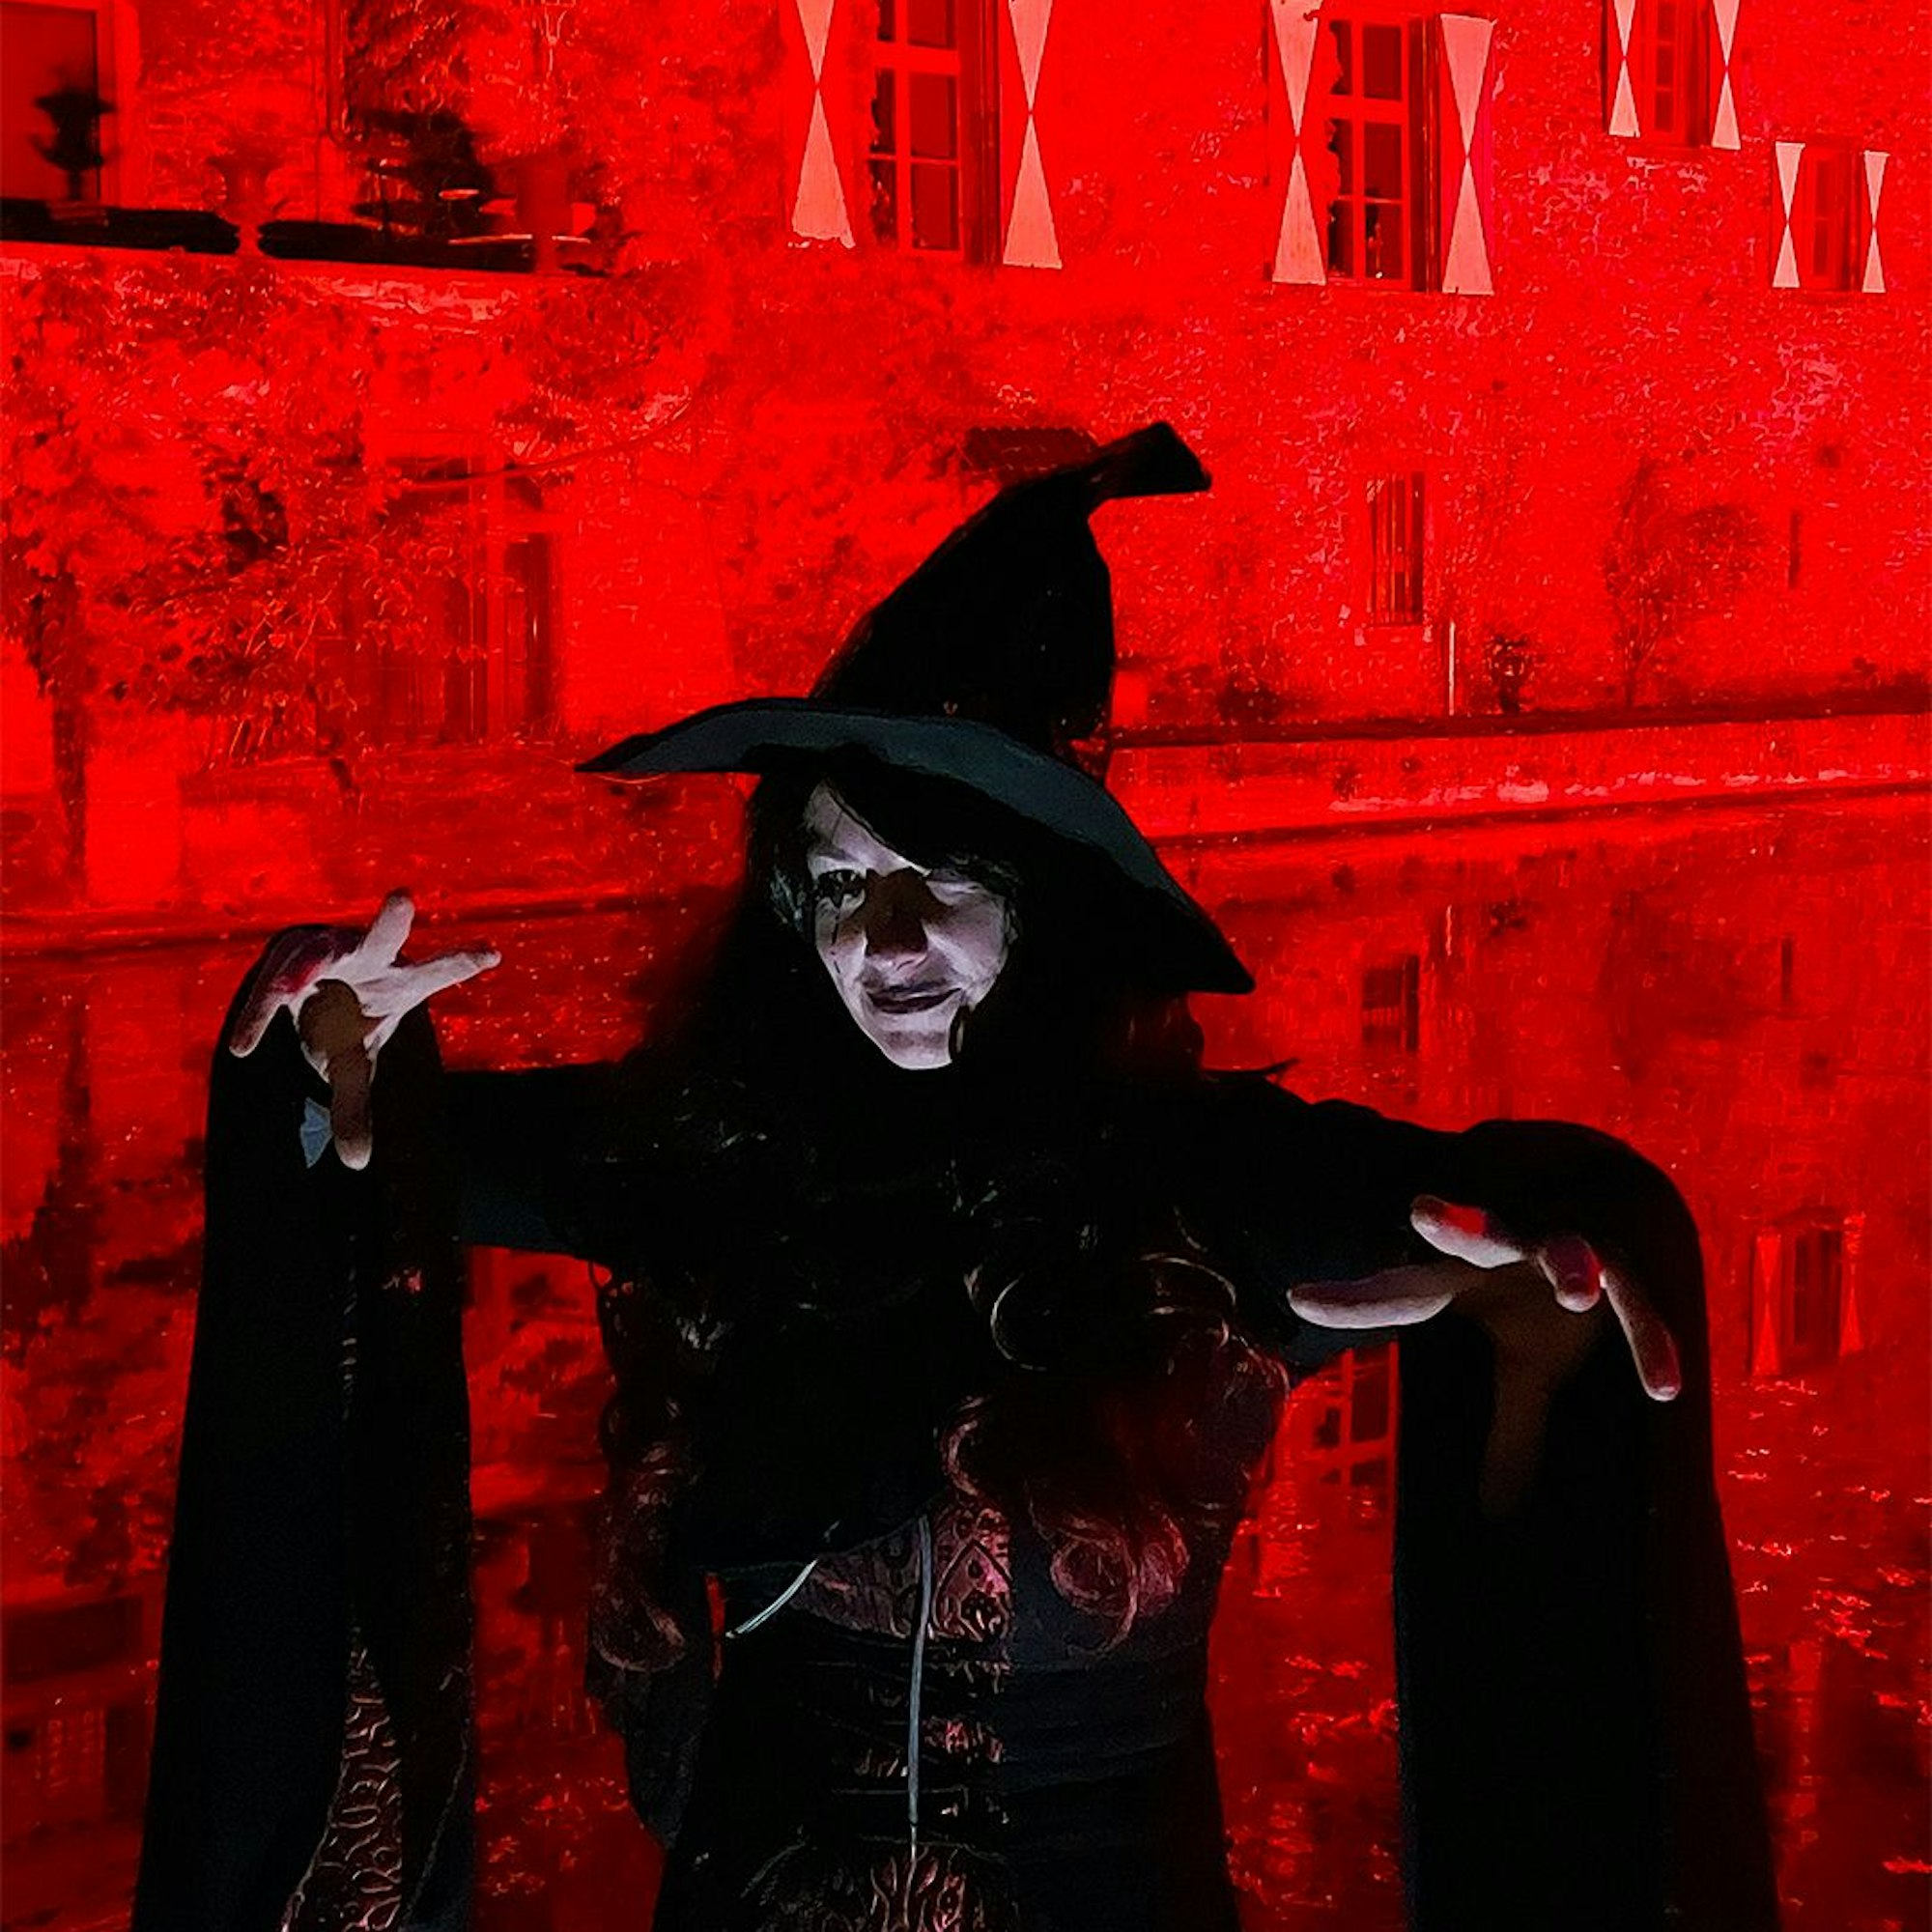 Als Hexenzauberin lauert die Frau vor der rot illuminierten Burg.